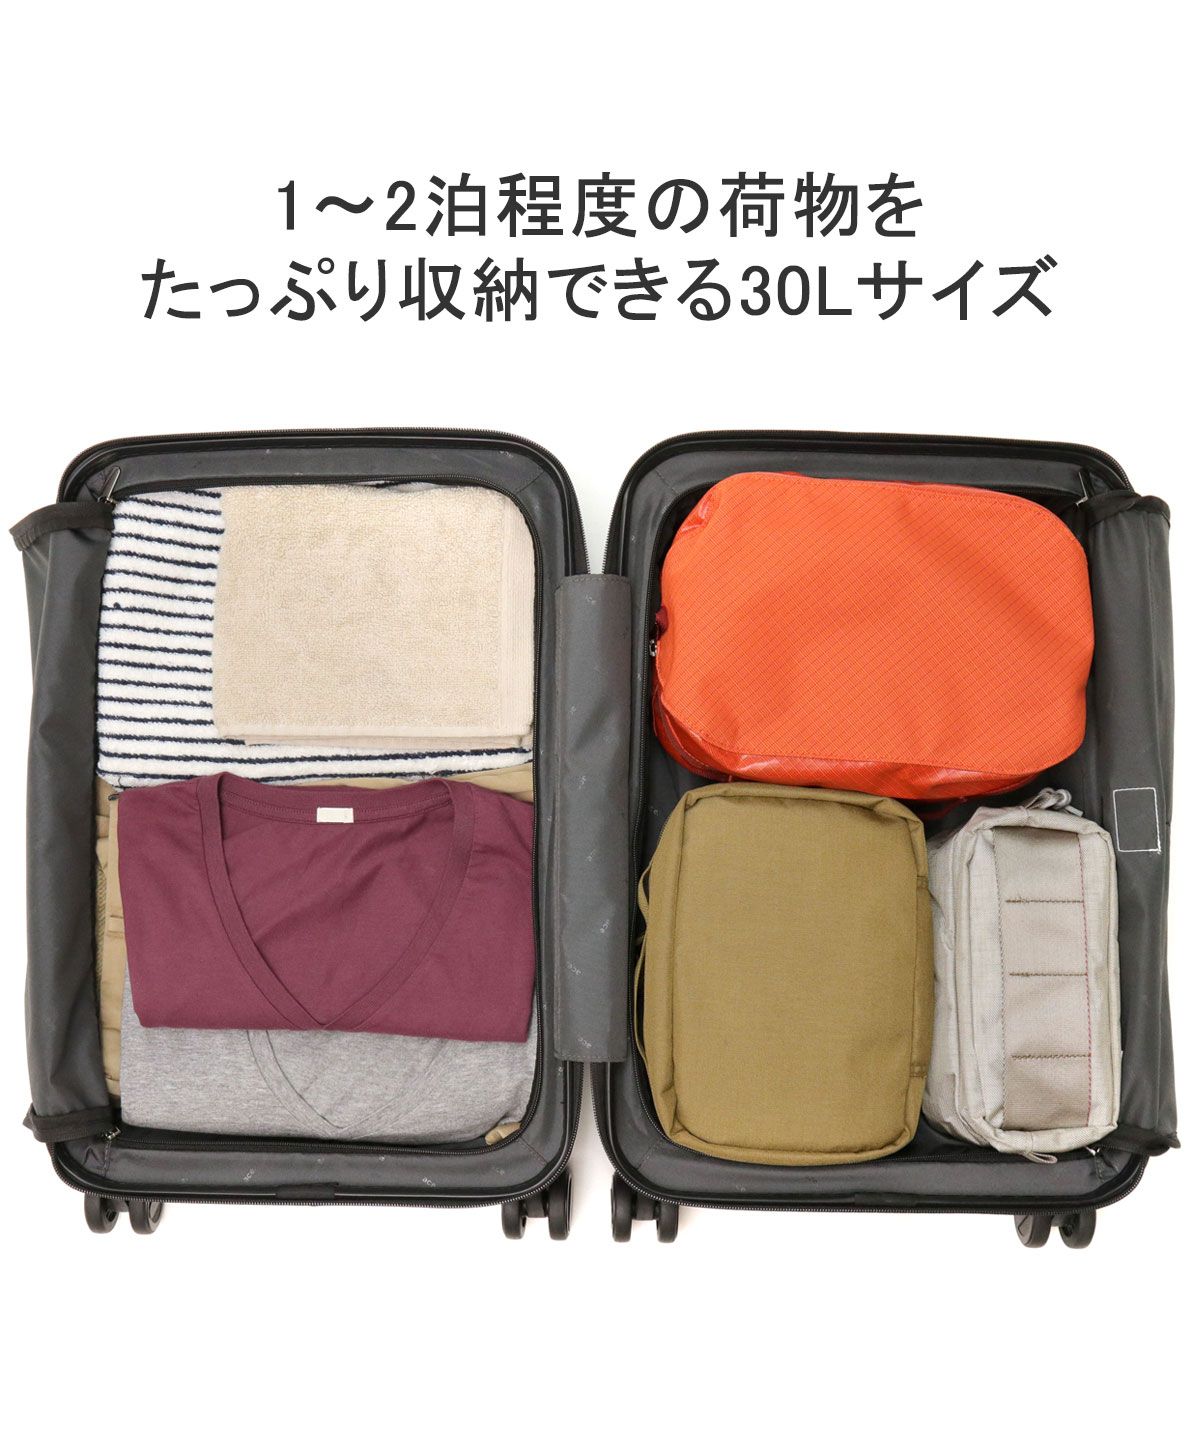 日本正規品】 エースジーン キャリーバック スーツケース 機内持ち込み